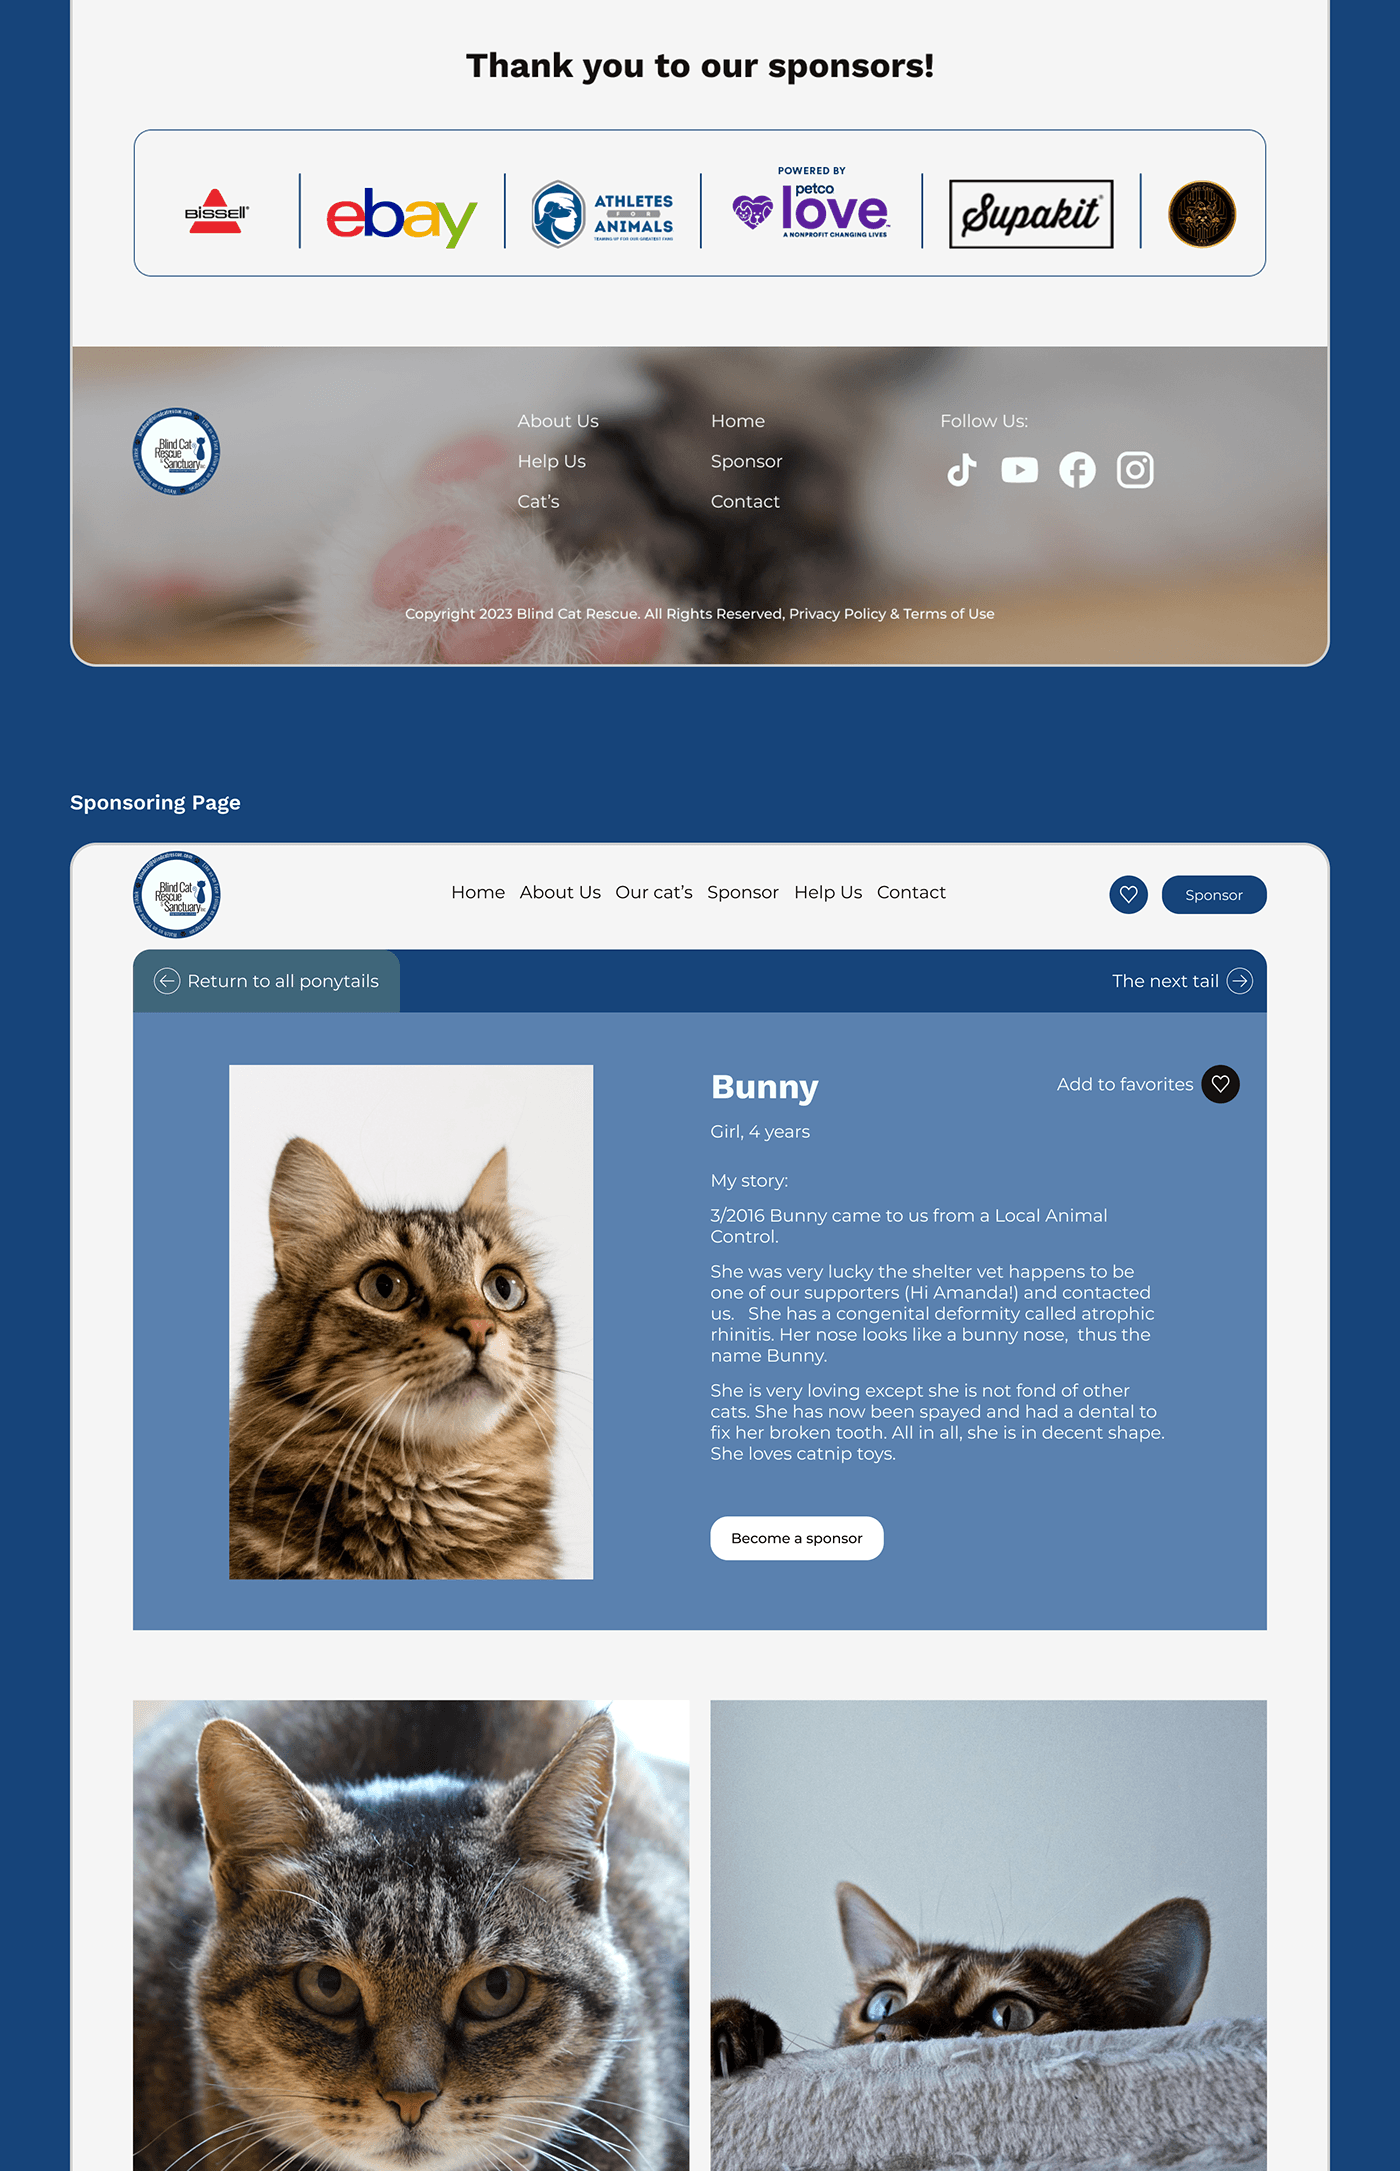 design blind UI/UX user interface Web Design  ux/ui Website ui design shelter blind cat